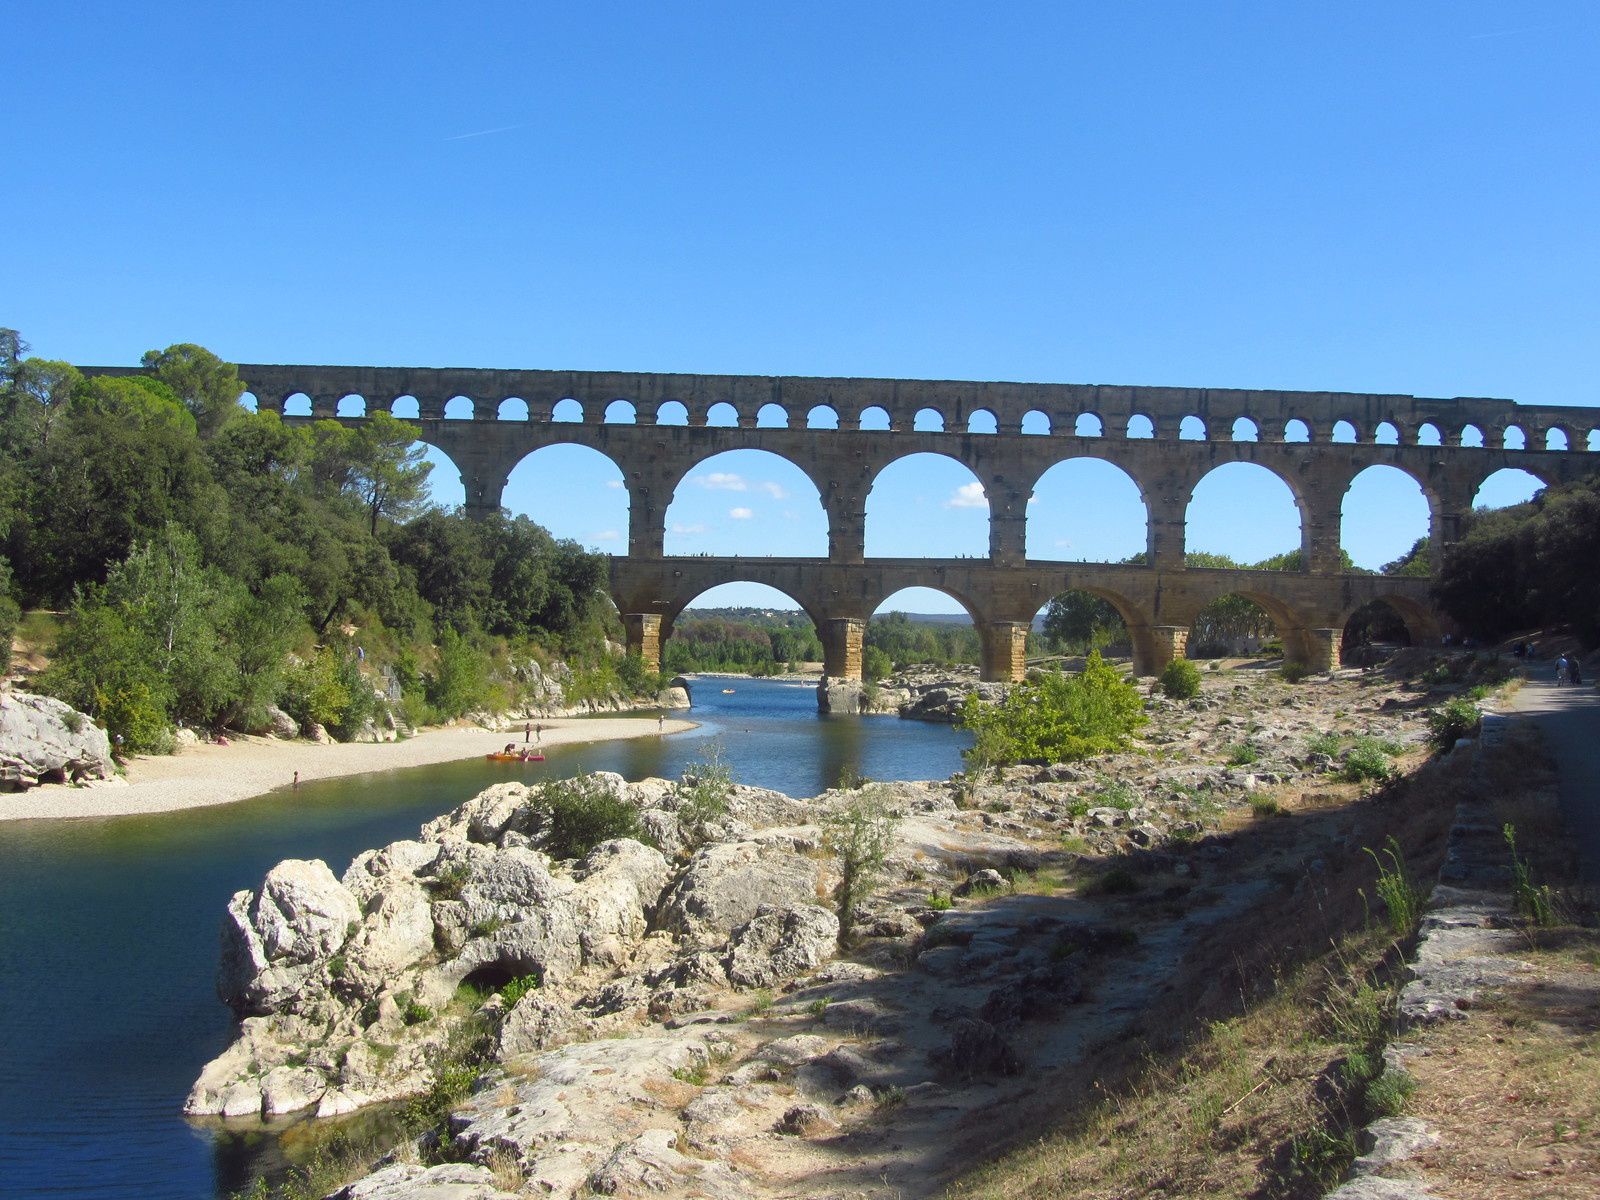  Le Pont du Gard sous toutes les coutures